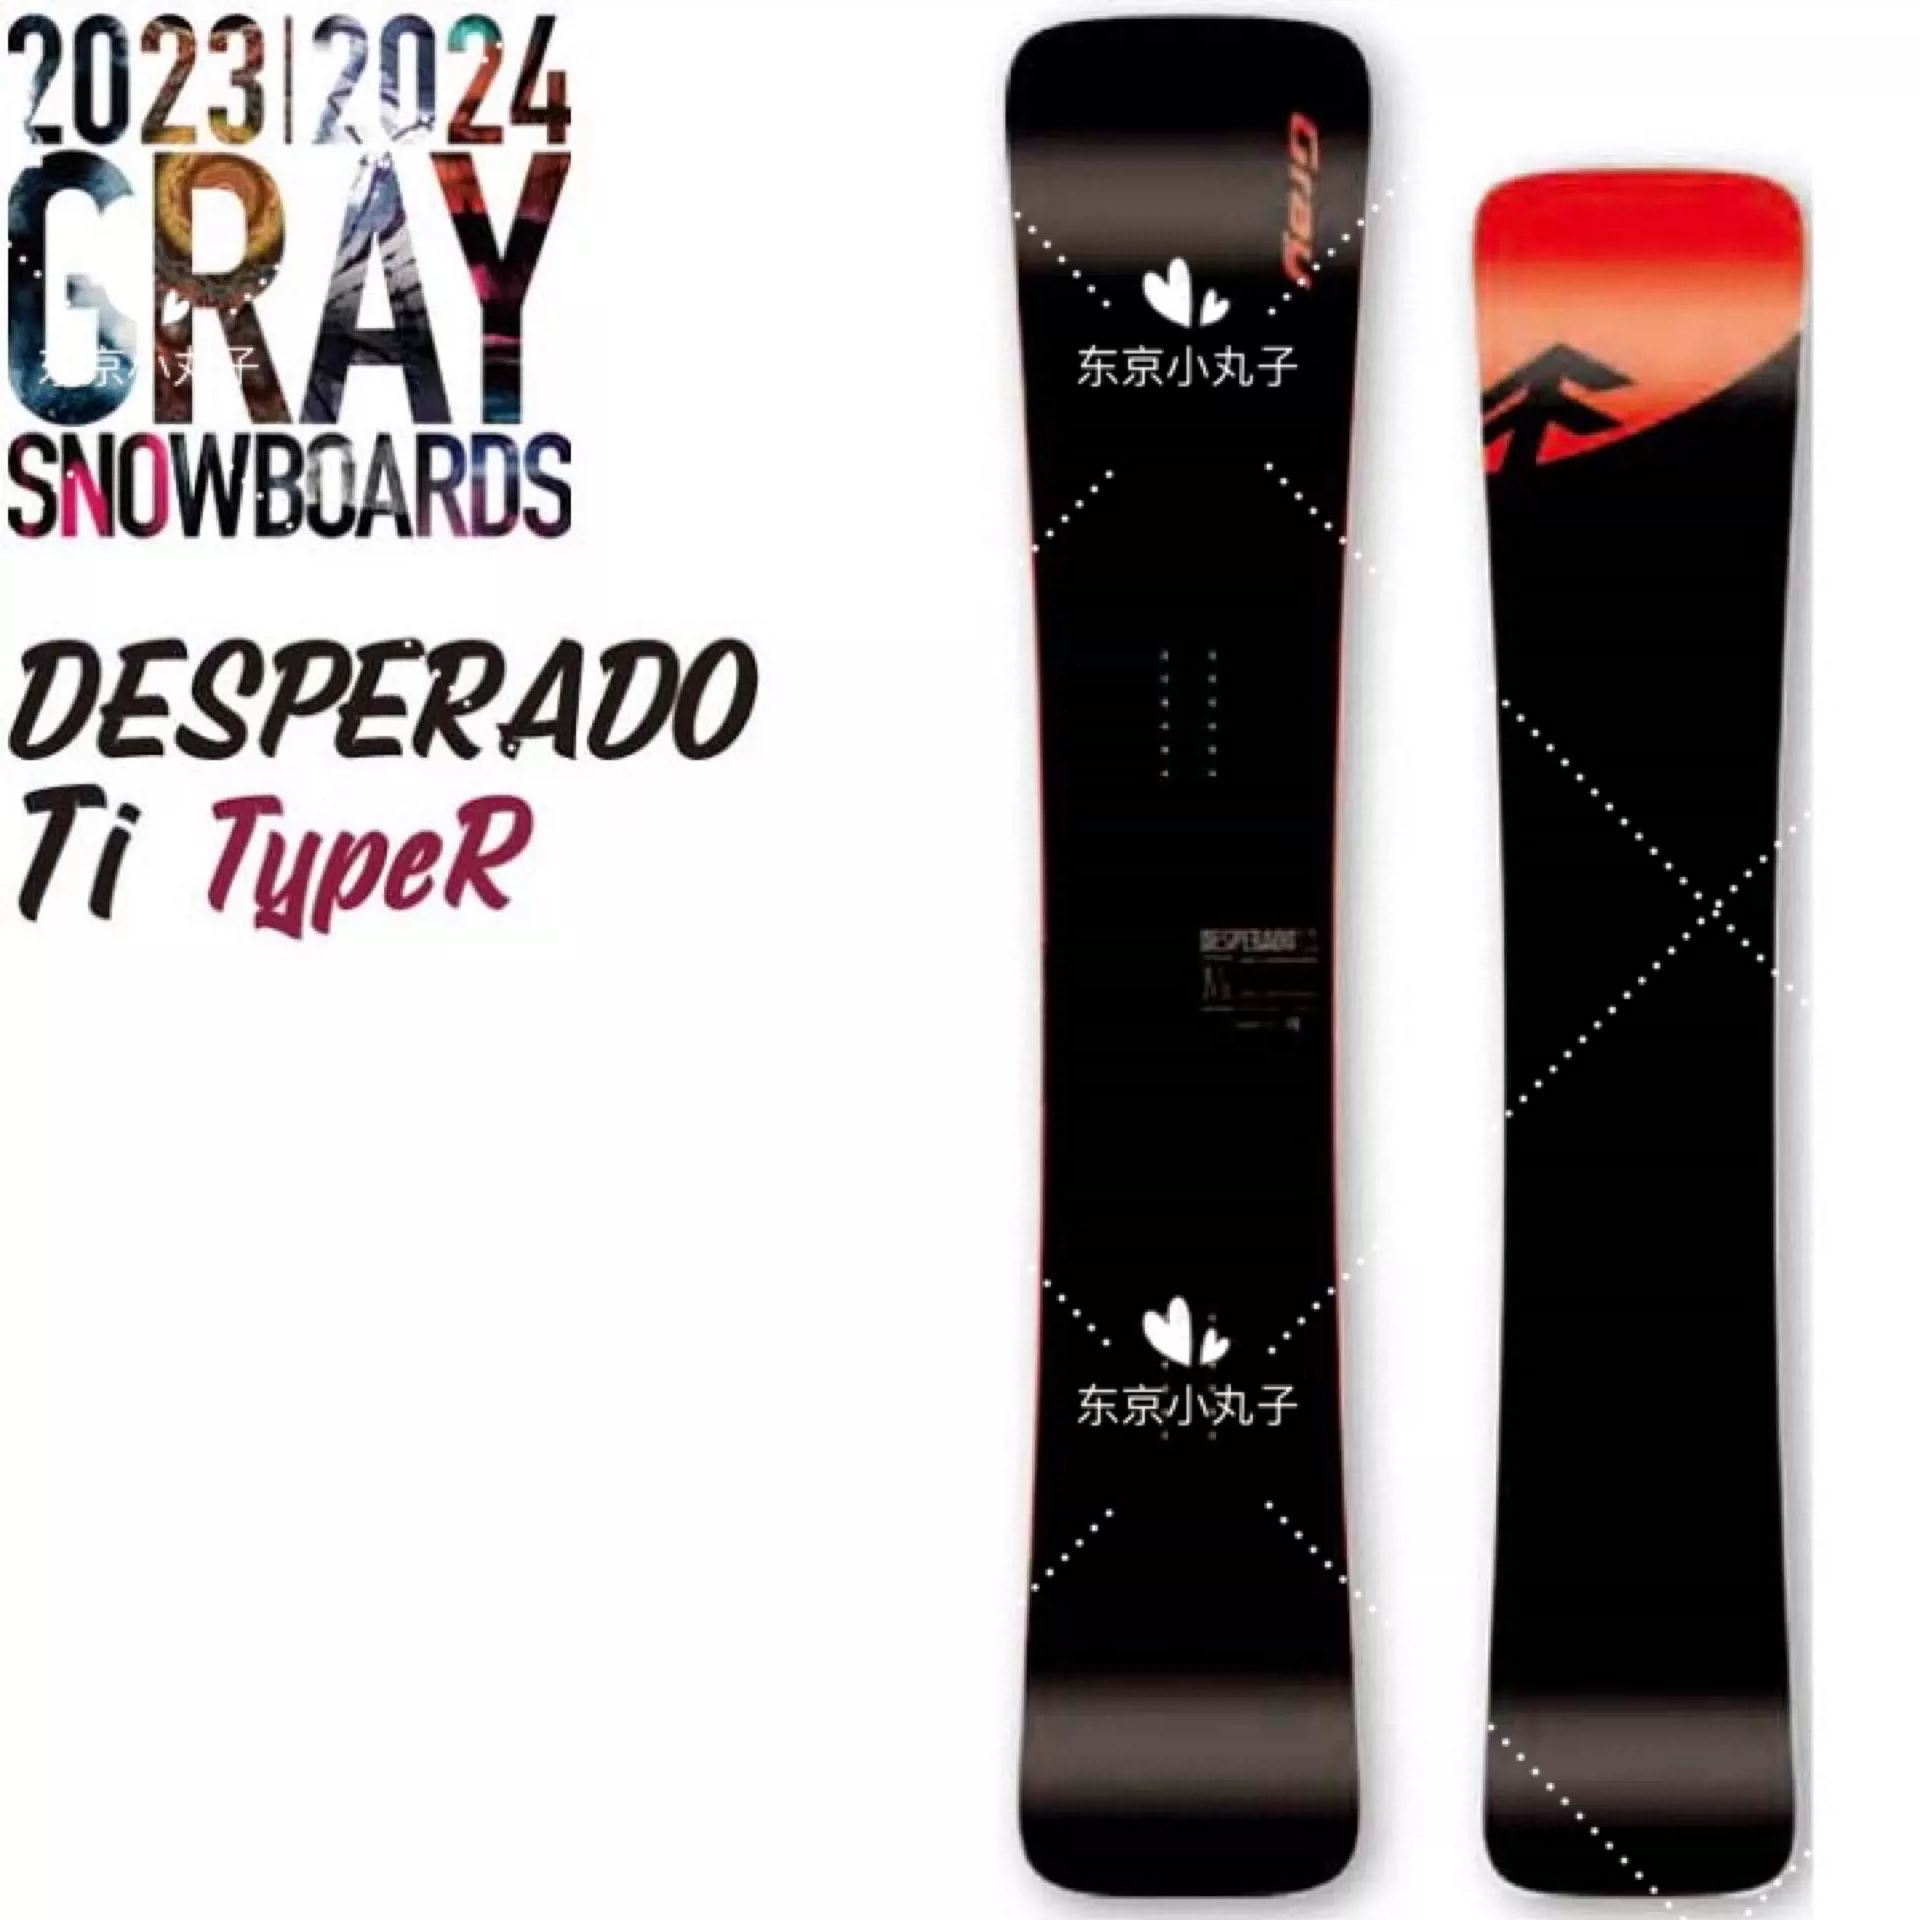 gray desperado ti Ⅲ グレイデスペラード スノーボード - ボード